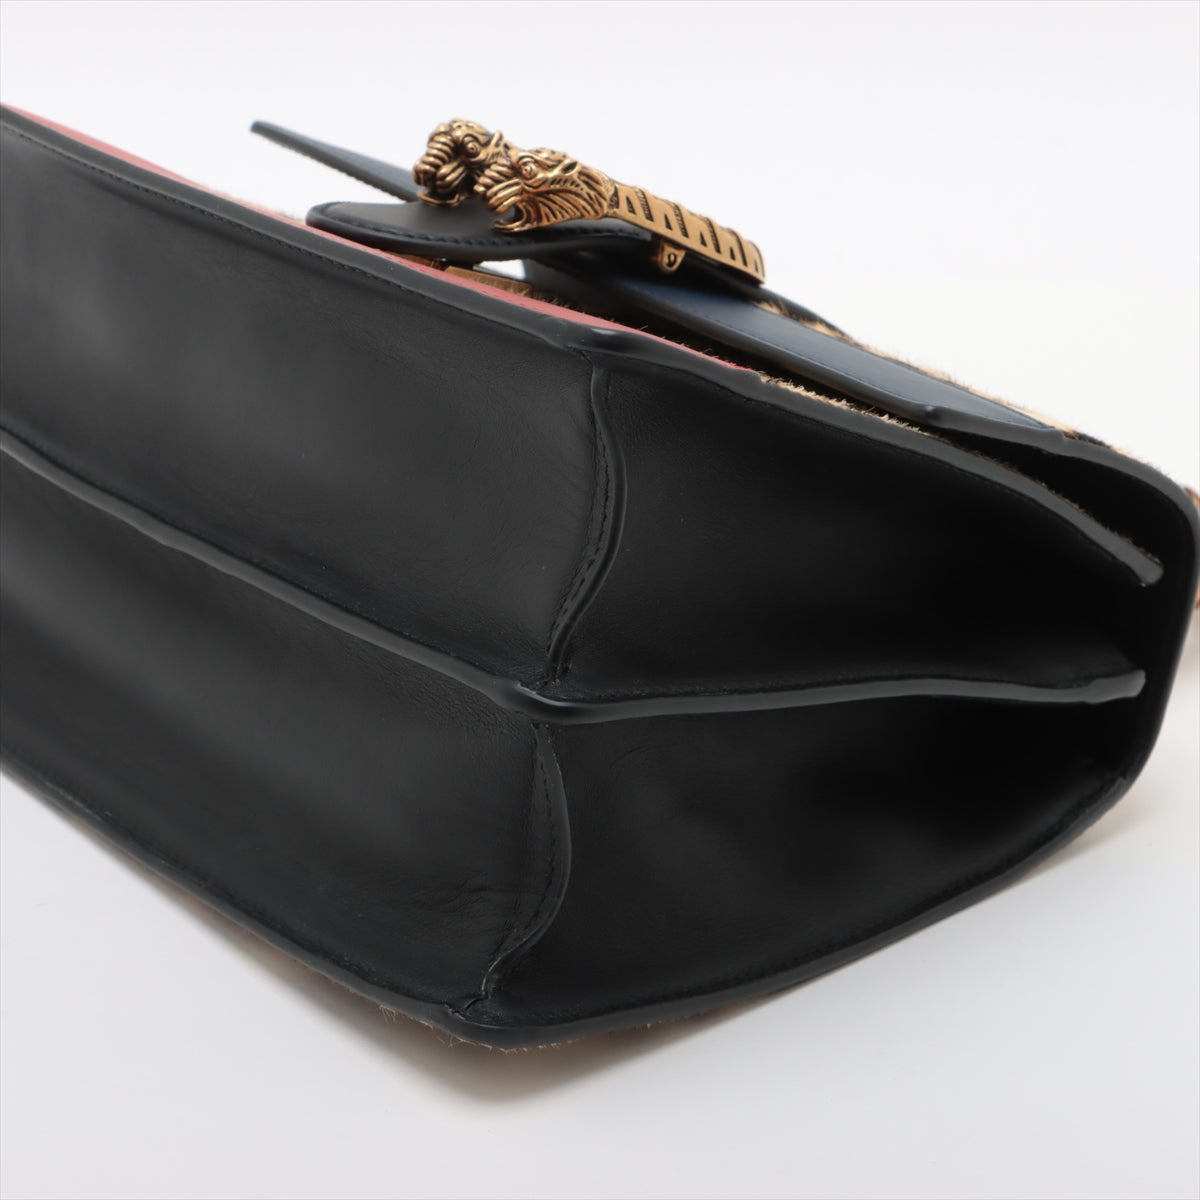 Gucci Dionysus Leather & unborn calf 2way handbag Multicolor 448075